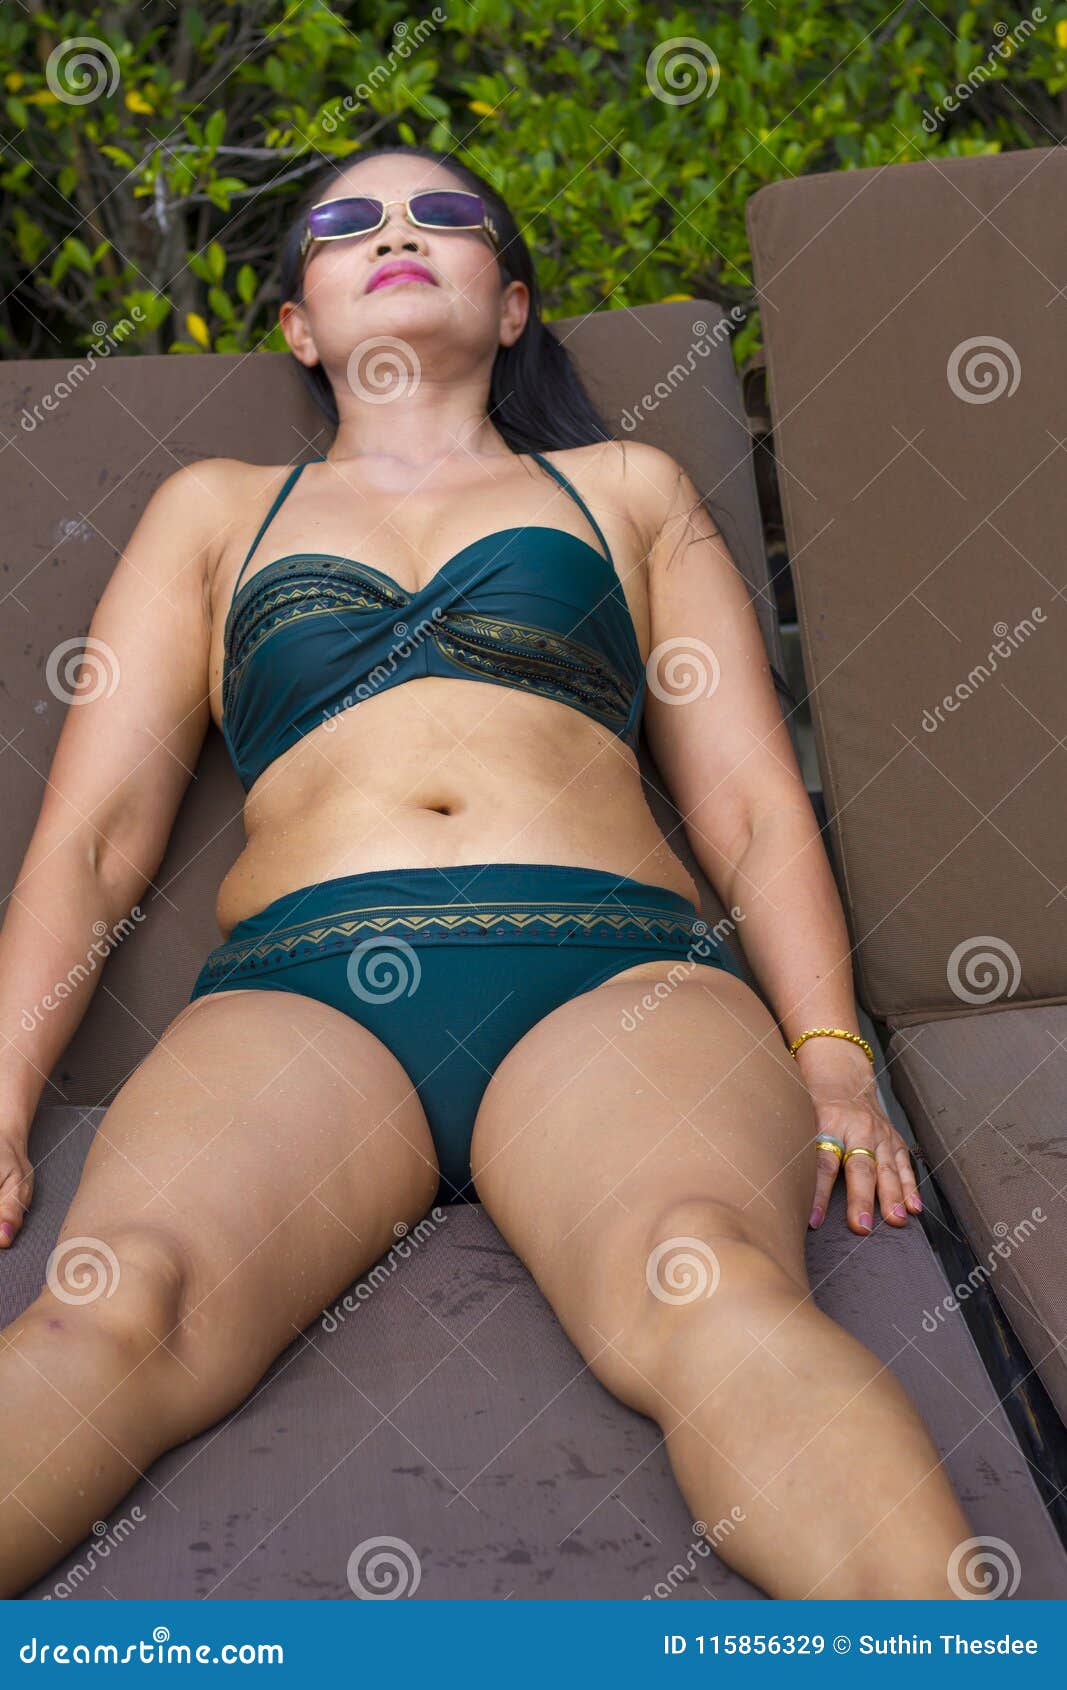 Woman Shape Sex Symbol with Bikini in Swimming Pool Stock Image